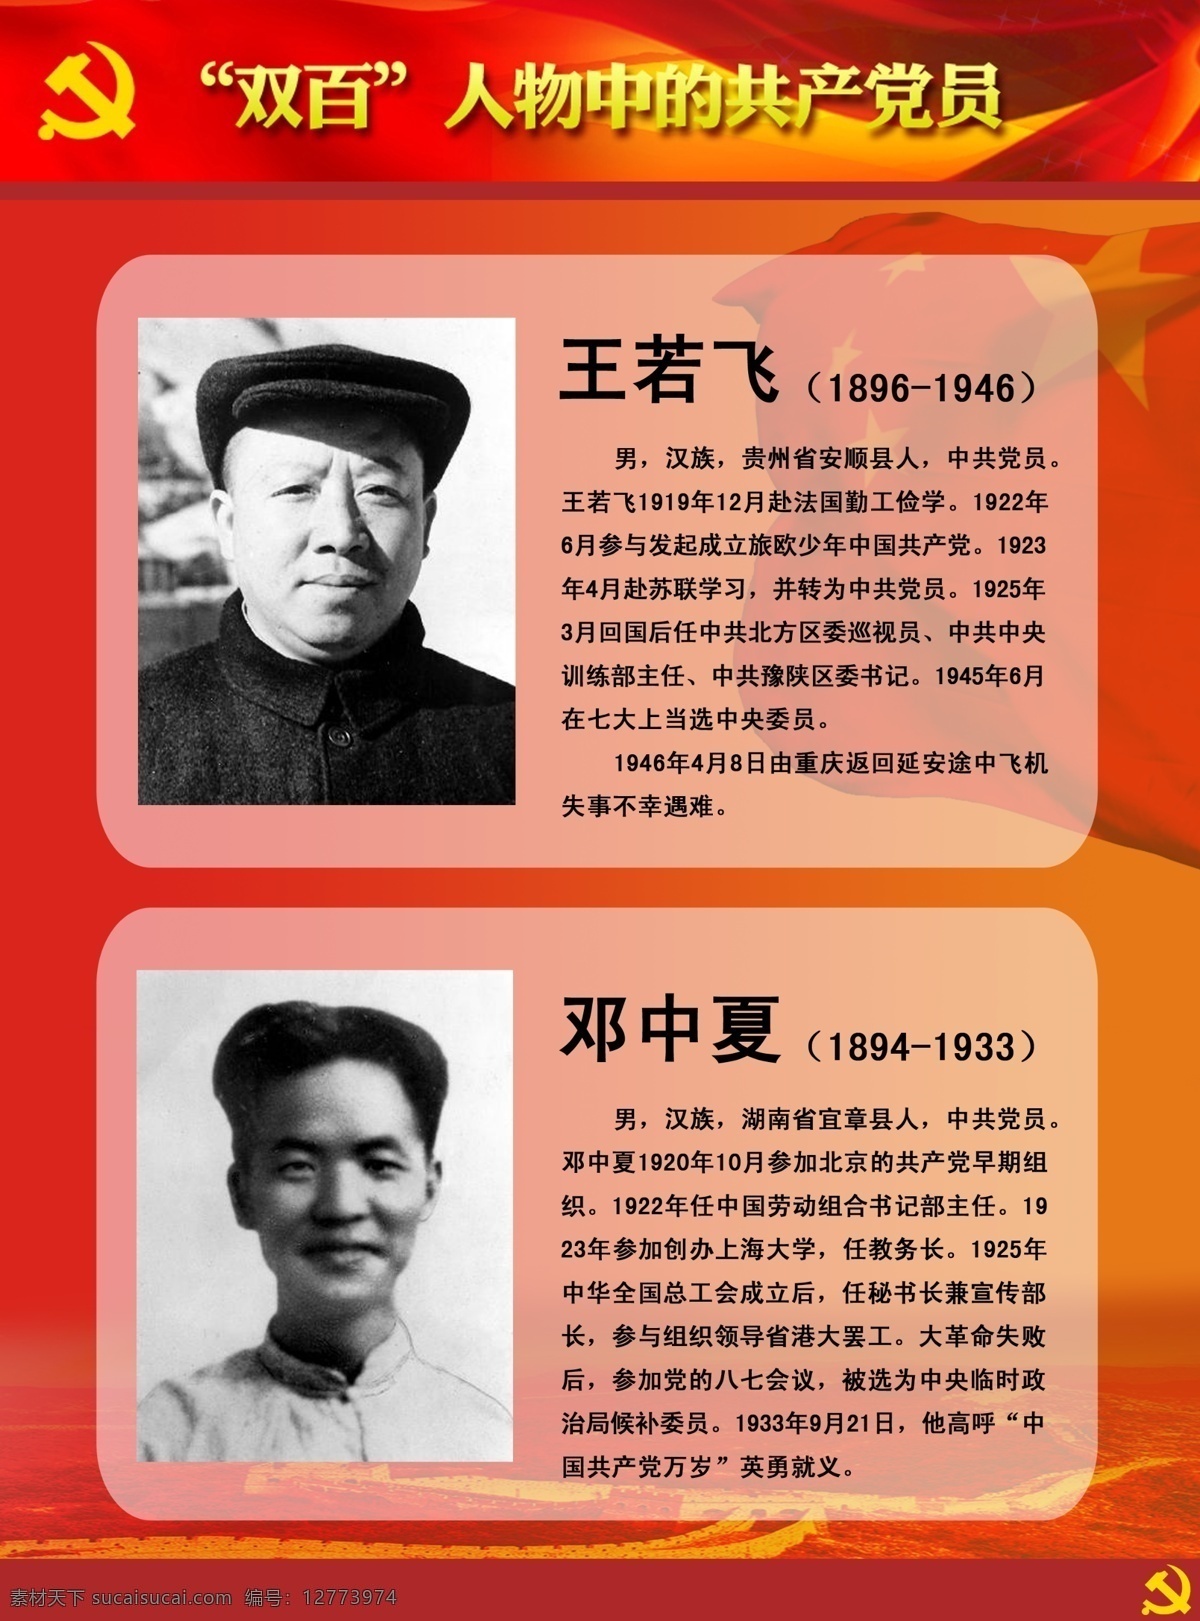 双百人物展板 双百 人物 中 共产党员 王若飞 邓中夏 英雄人物 牺牲 英雄 展板模板 广告设计模板 源文件